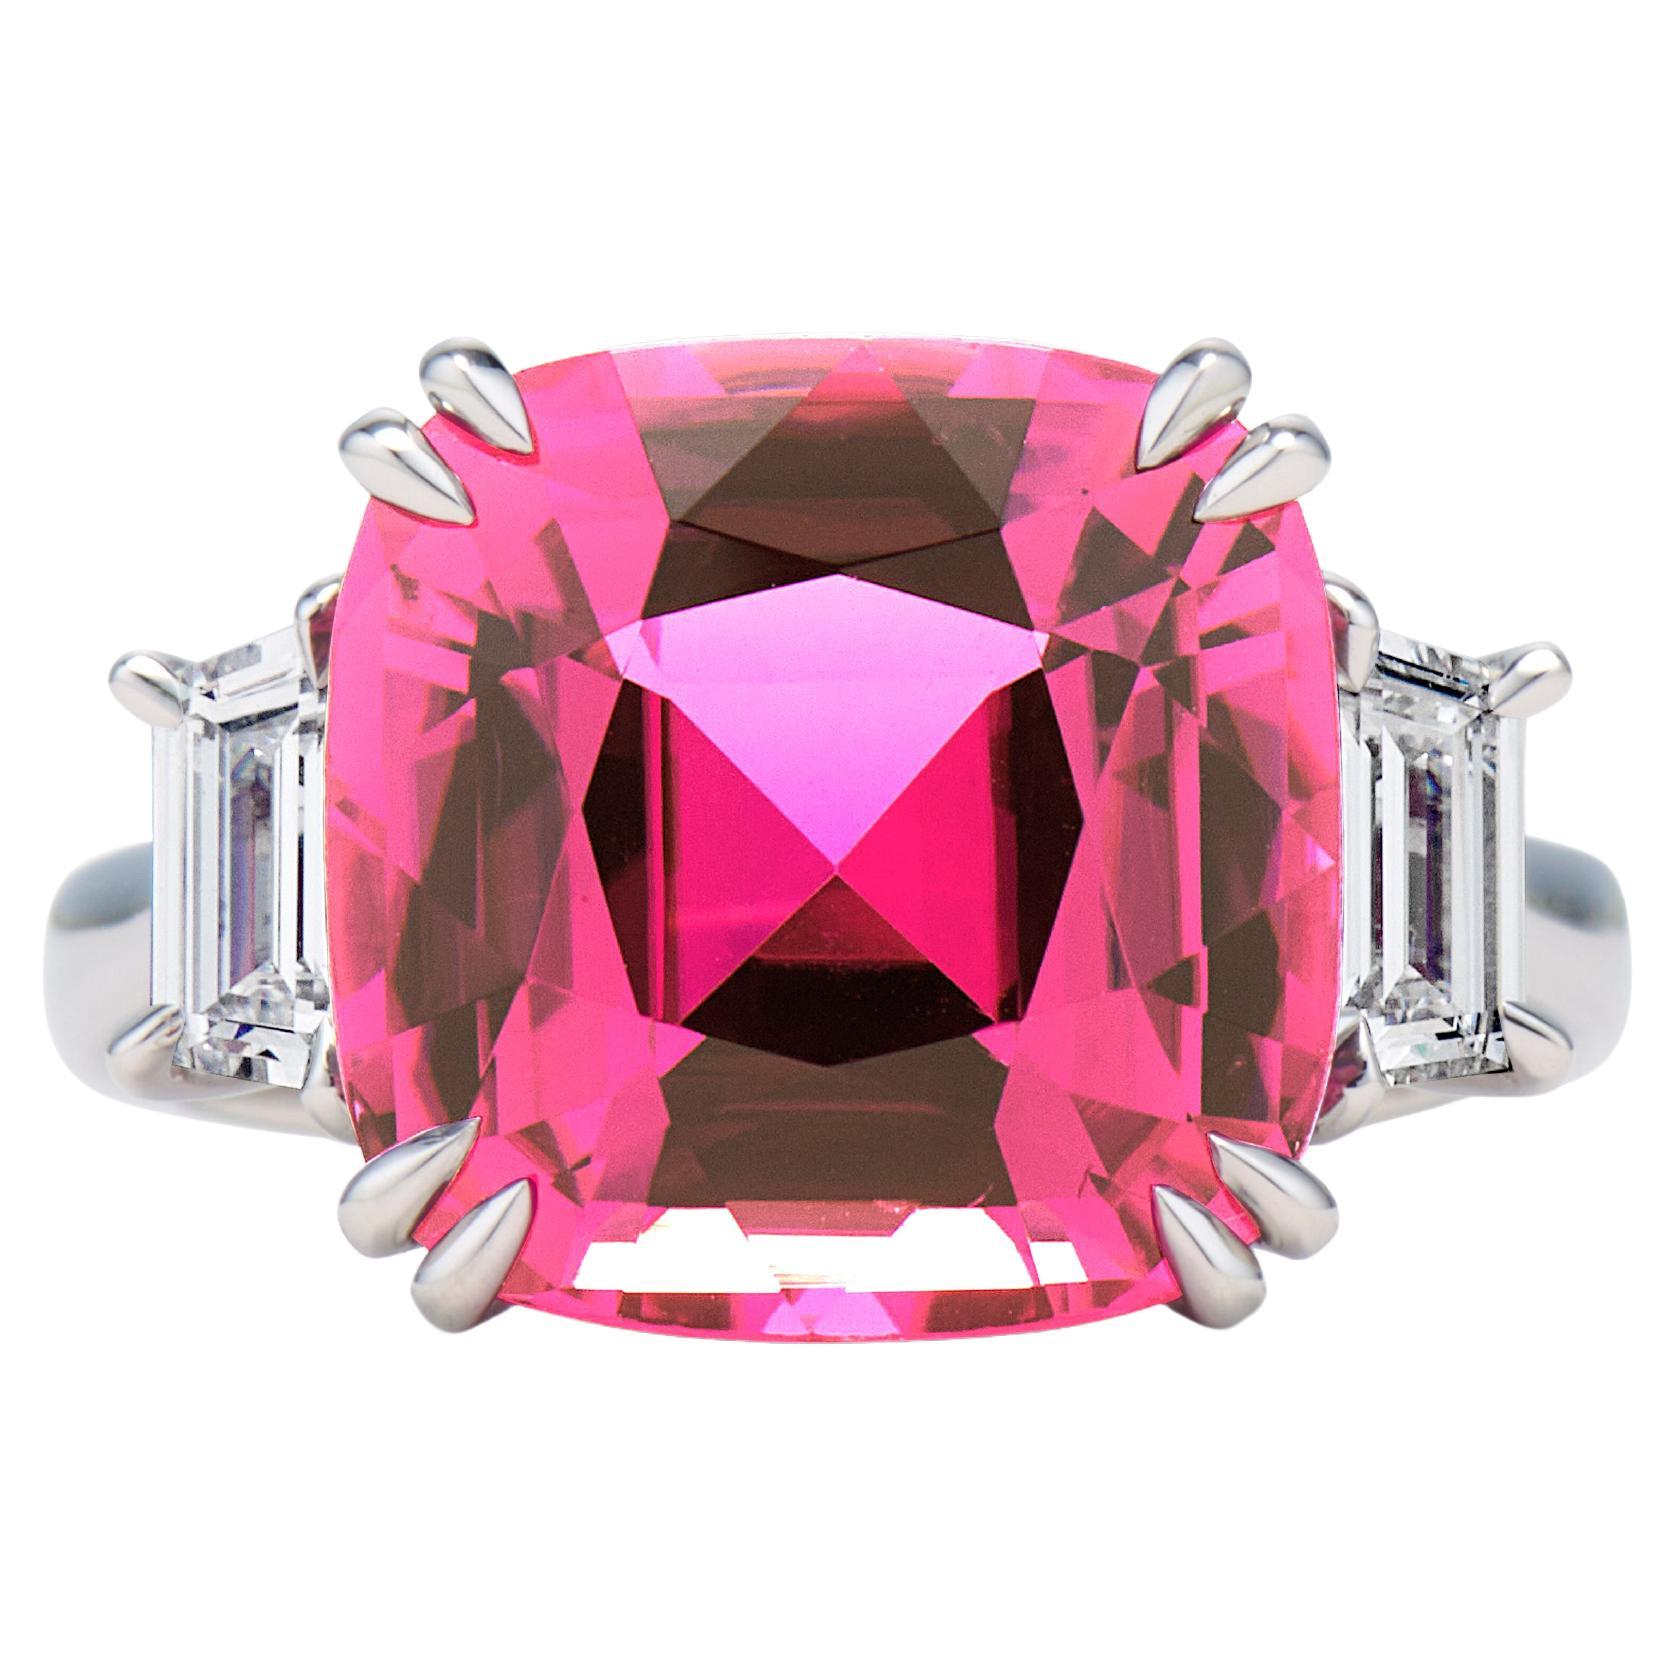 7.7 carat Pink Tourmaline Diamond Ring